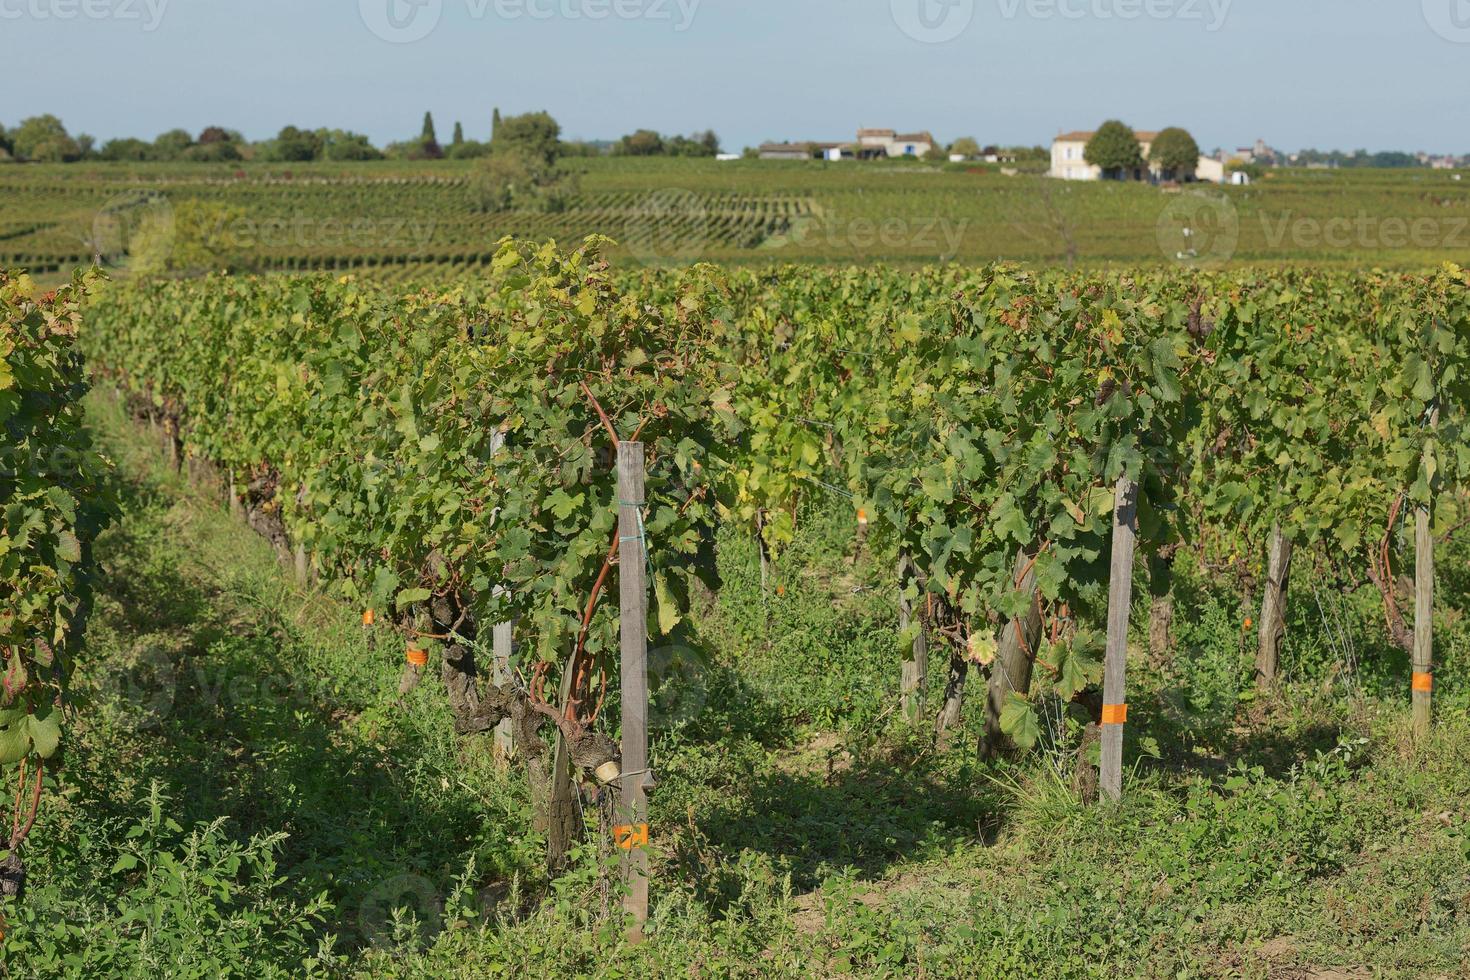 druvor i vingården i södra Frankrike i Provence foto